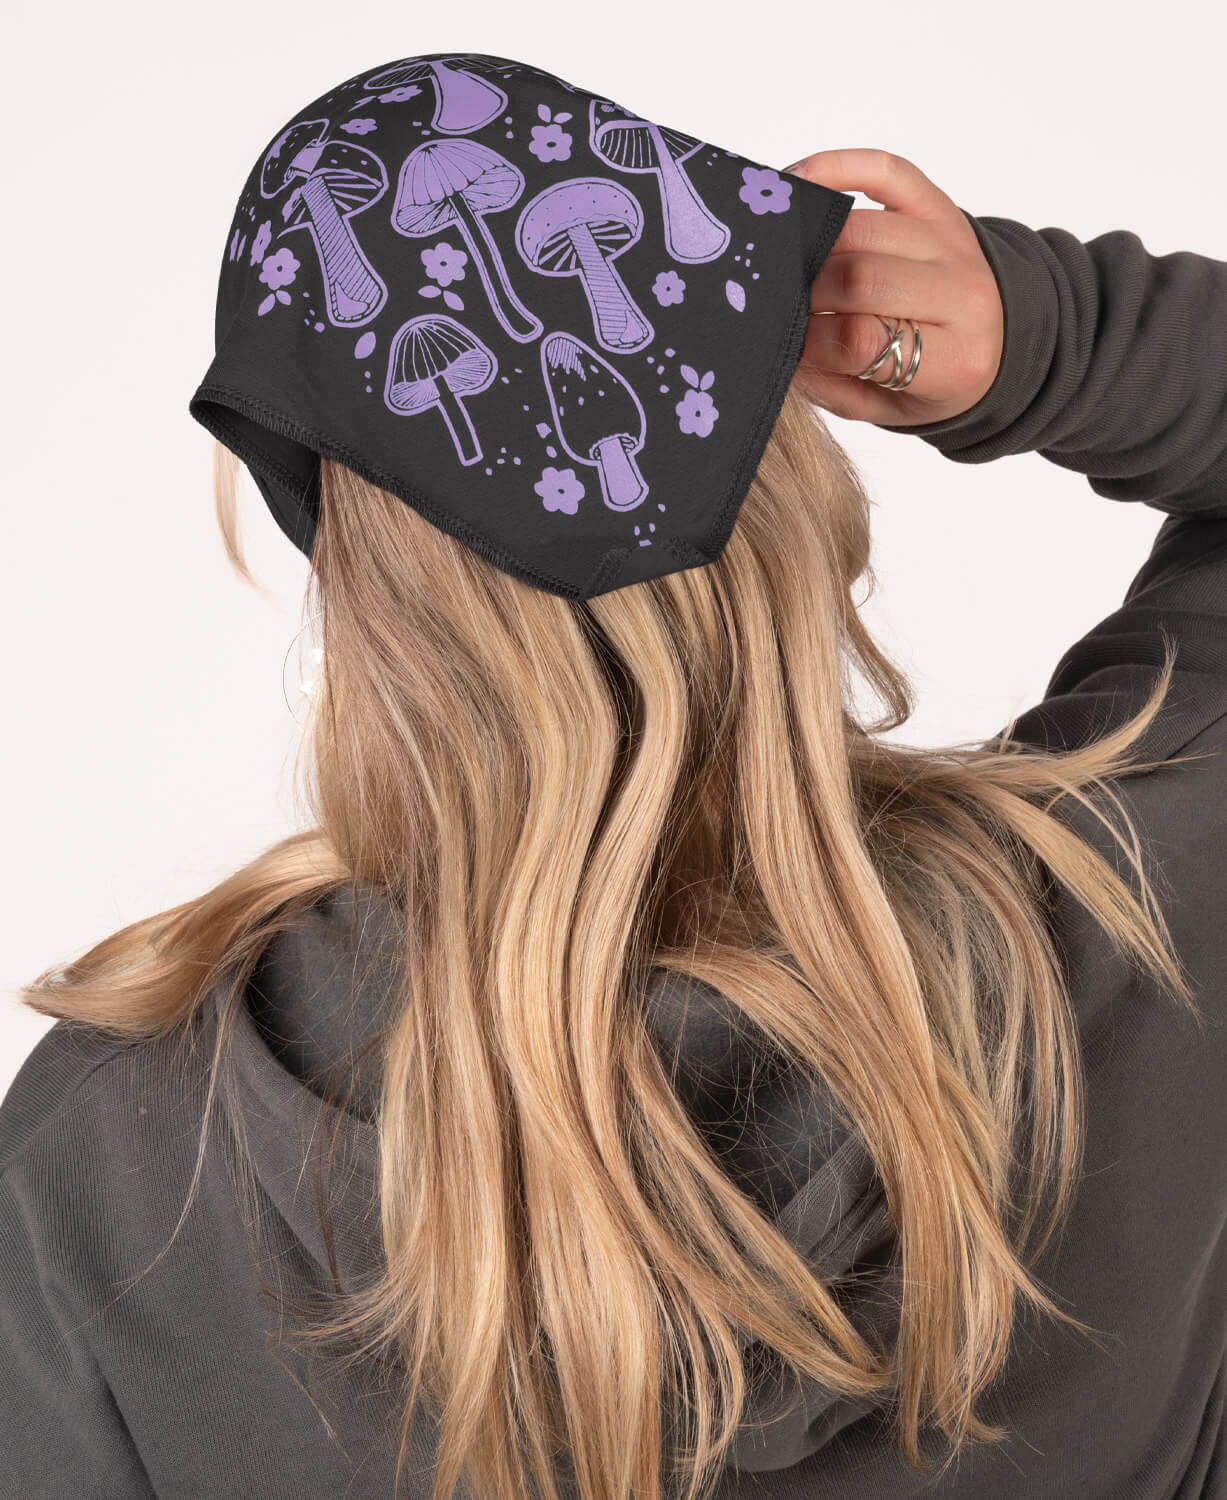 NEW! Retro Mushrooms Bandana Headband